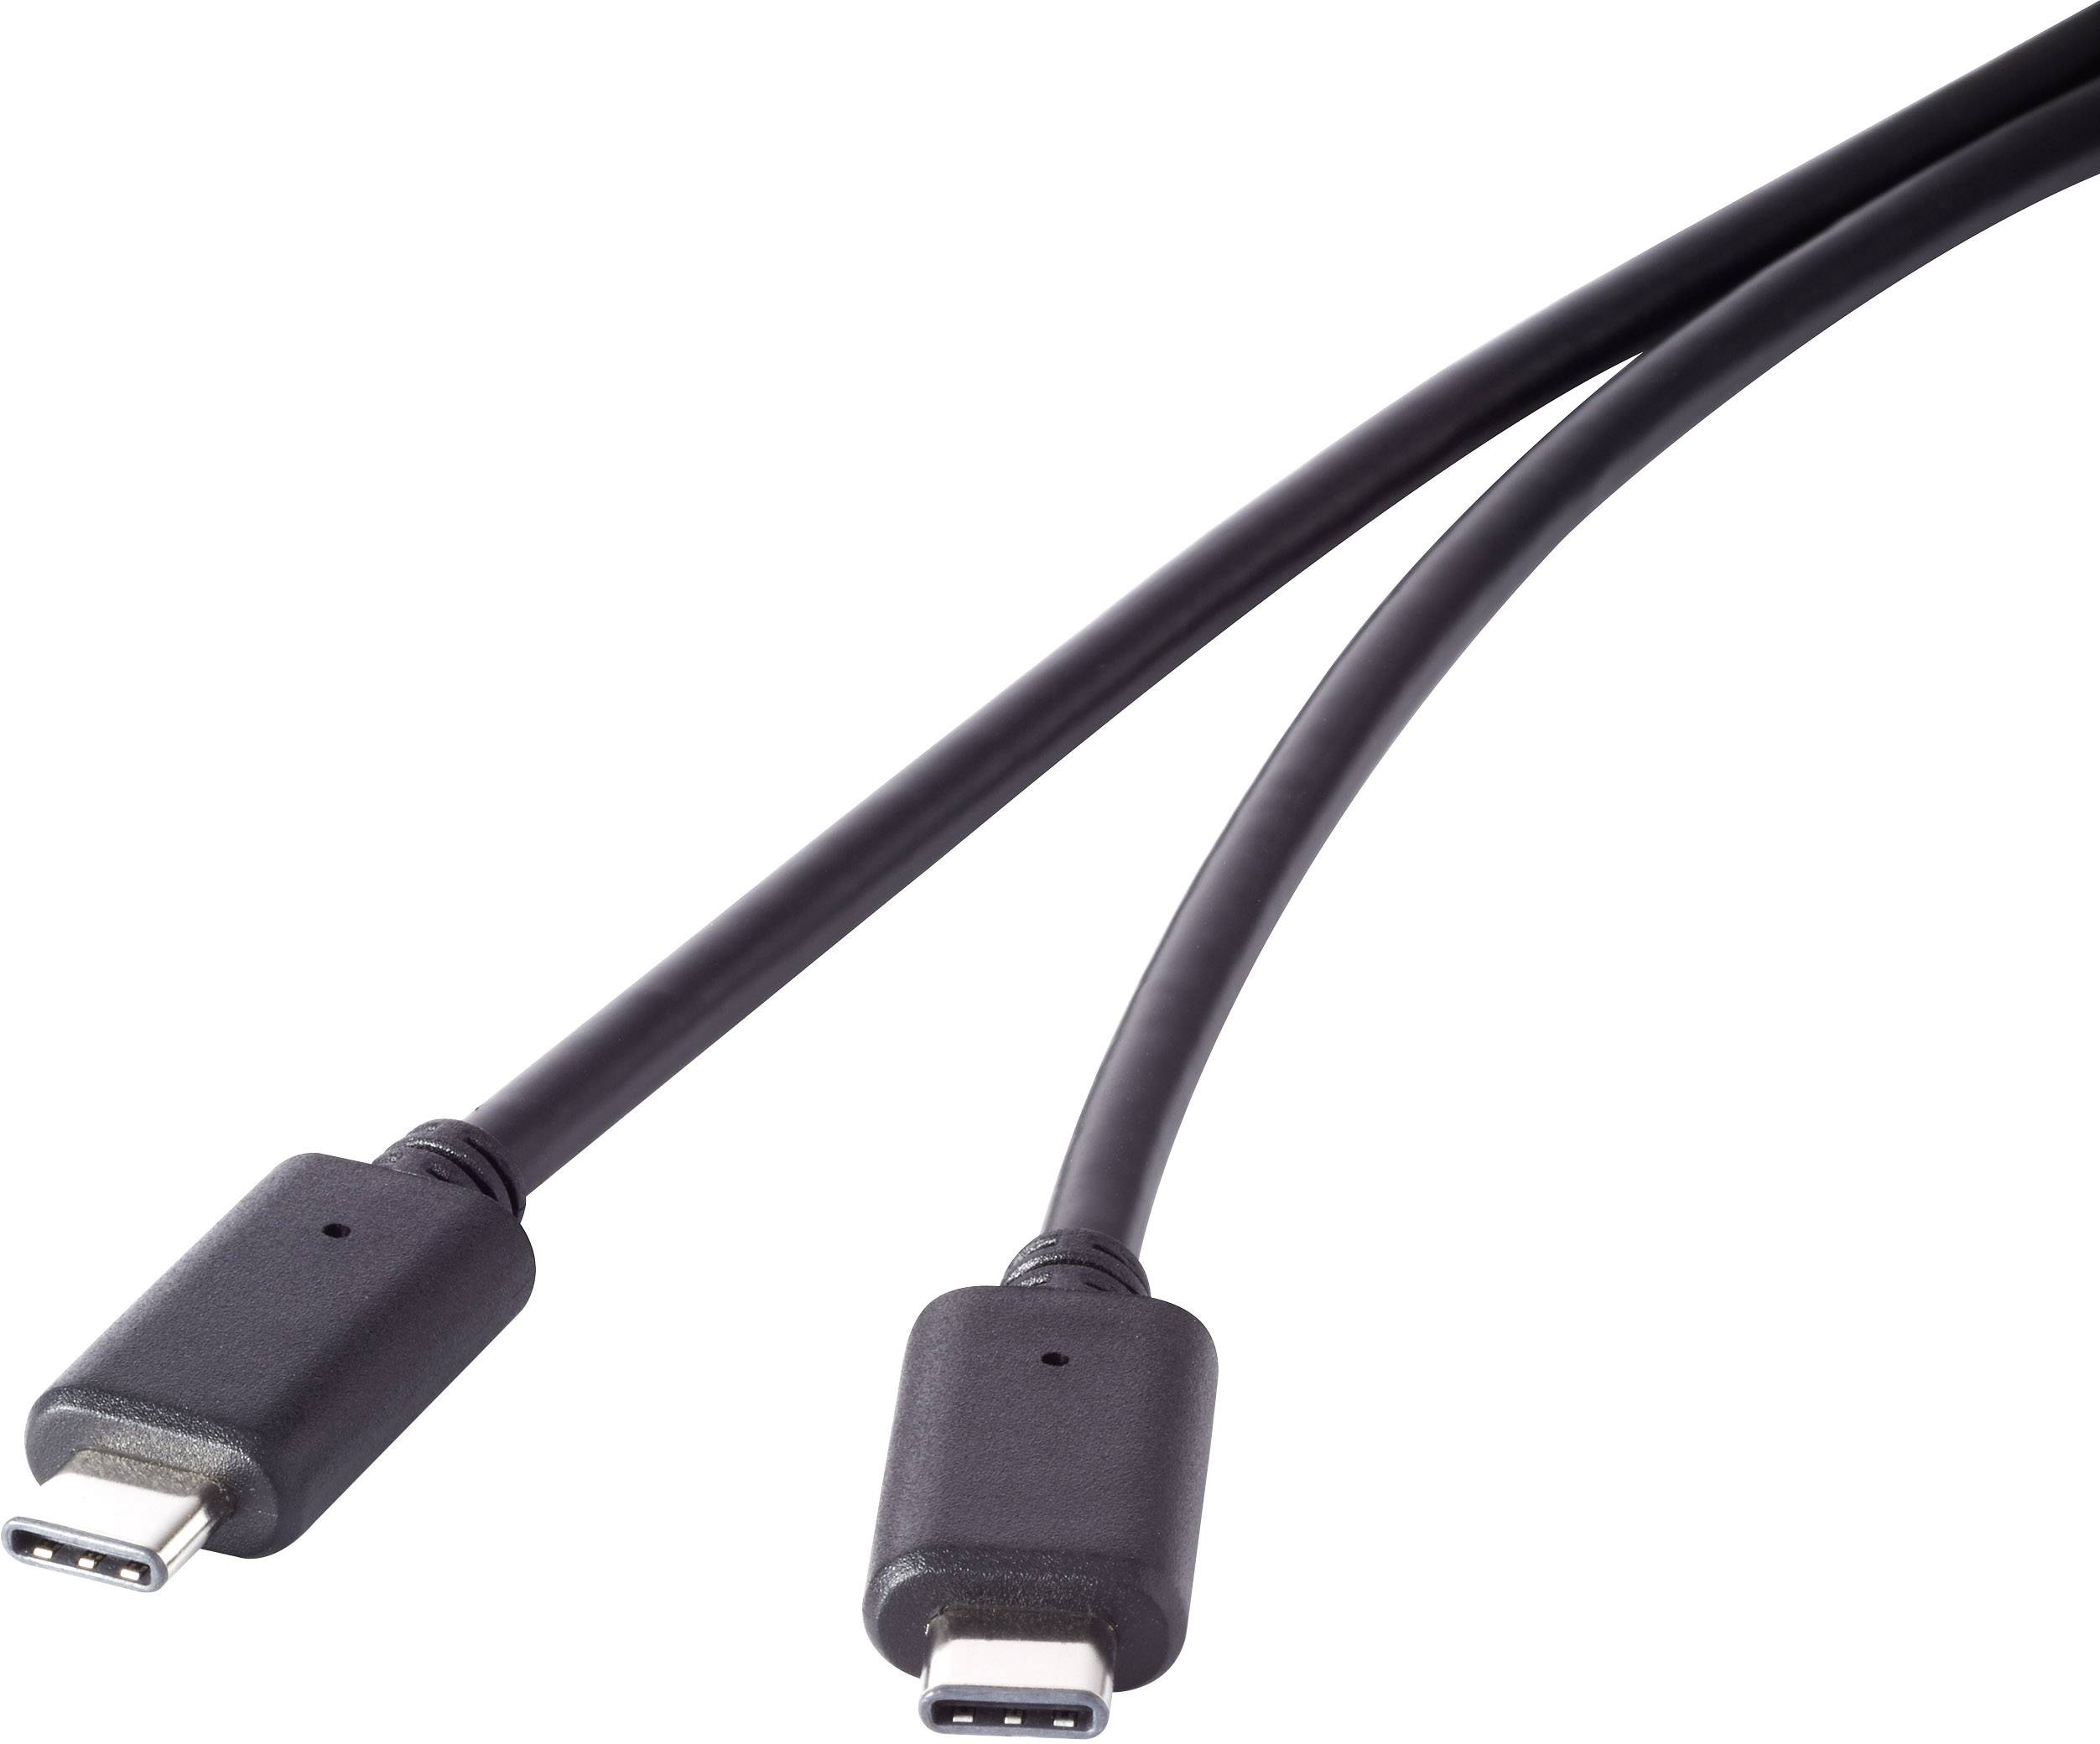 Usb c gen1. USB 3.2 gen2x2 Type-c. USB C 3.2 gen1. Кабель USB 3.1 Gen 2. USB3.2 gen1 Cable.